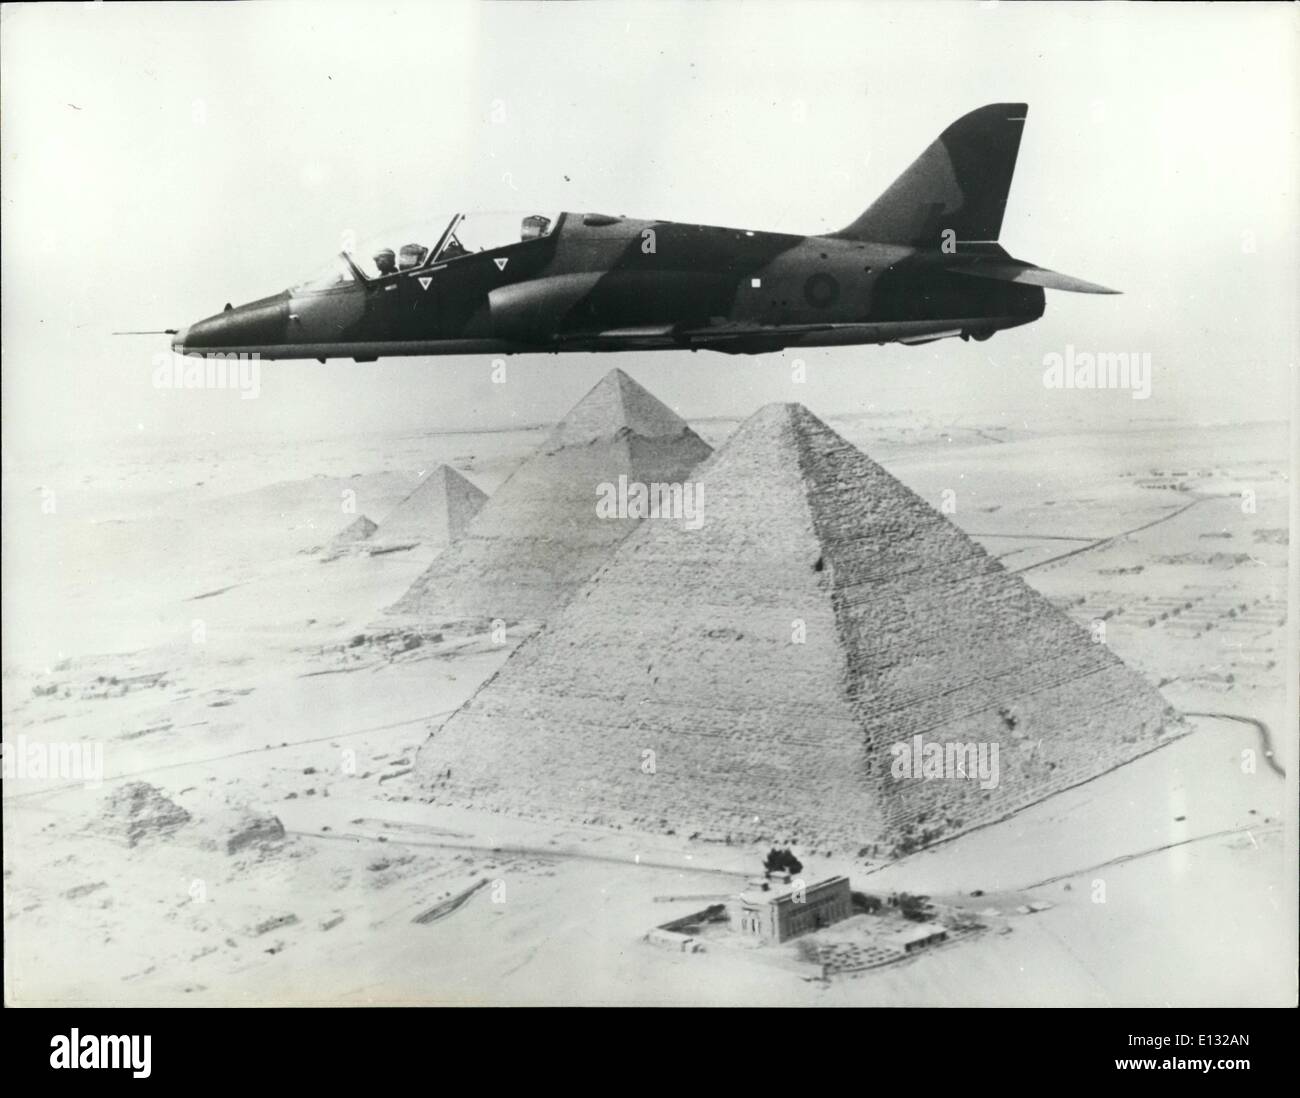 Febbraio 26, 2012 - Hobnobbing con le piramidi di questa spettacolare vista aerea mostra un nuovo HAWKER SIDDELEY Hawk volare alto con la Foto Stock